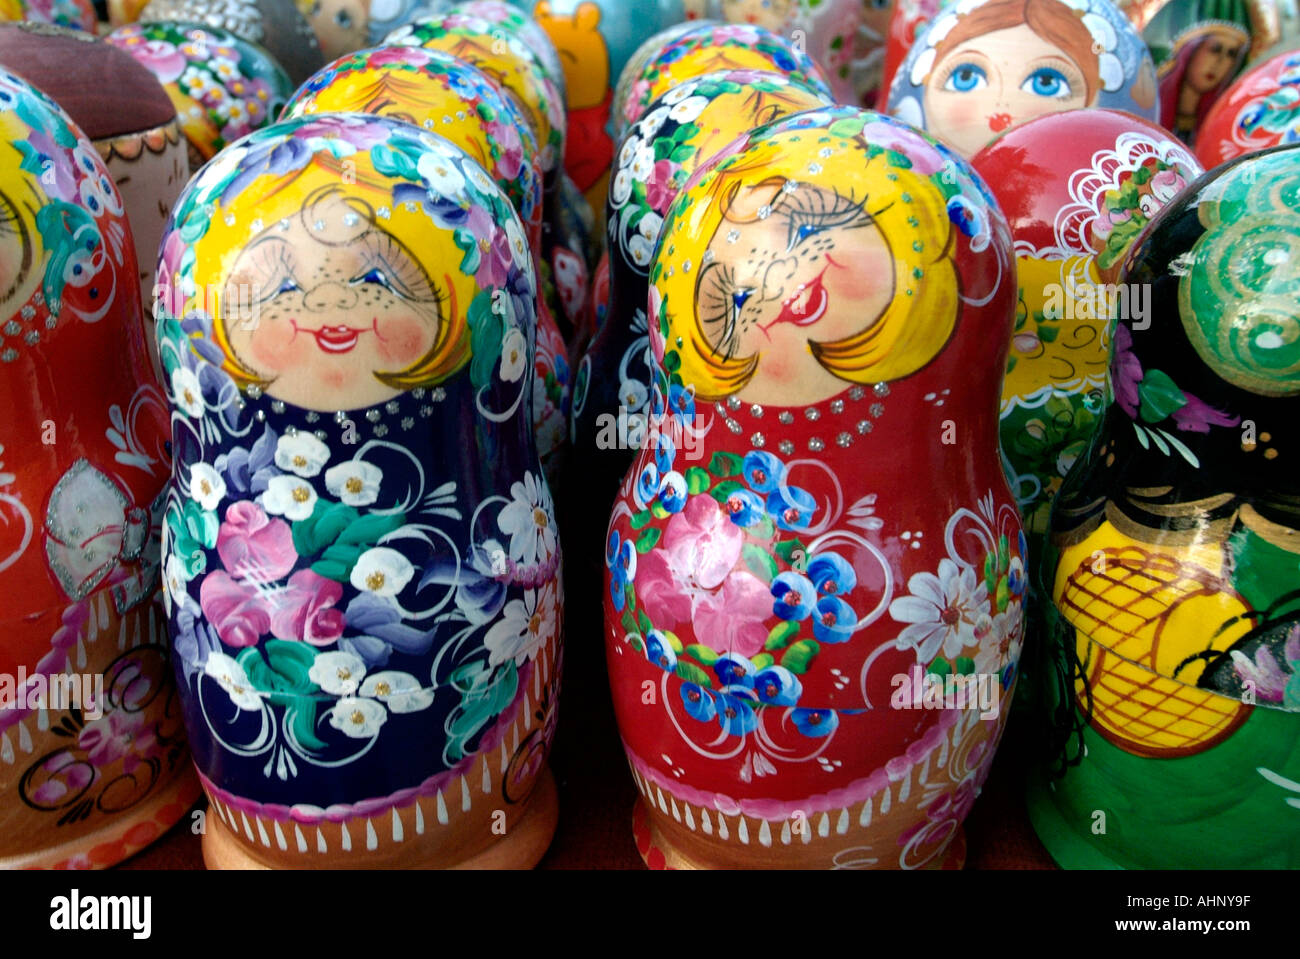 Nidification Babushka doll boutique de souvenirs Bulgarie République Populaire Narodna Republika Bulgariya la péninsule des Balkans au sud-est de l'Europe Banque D'Images